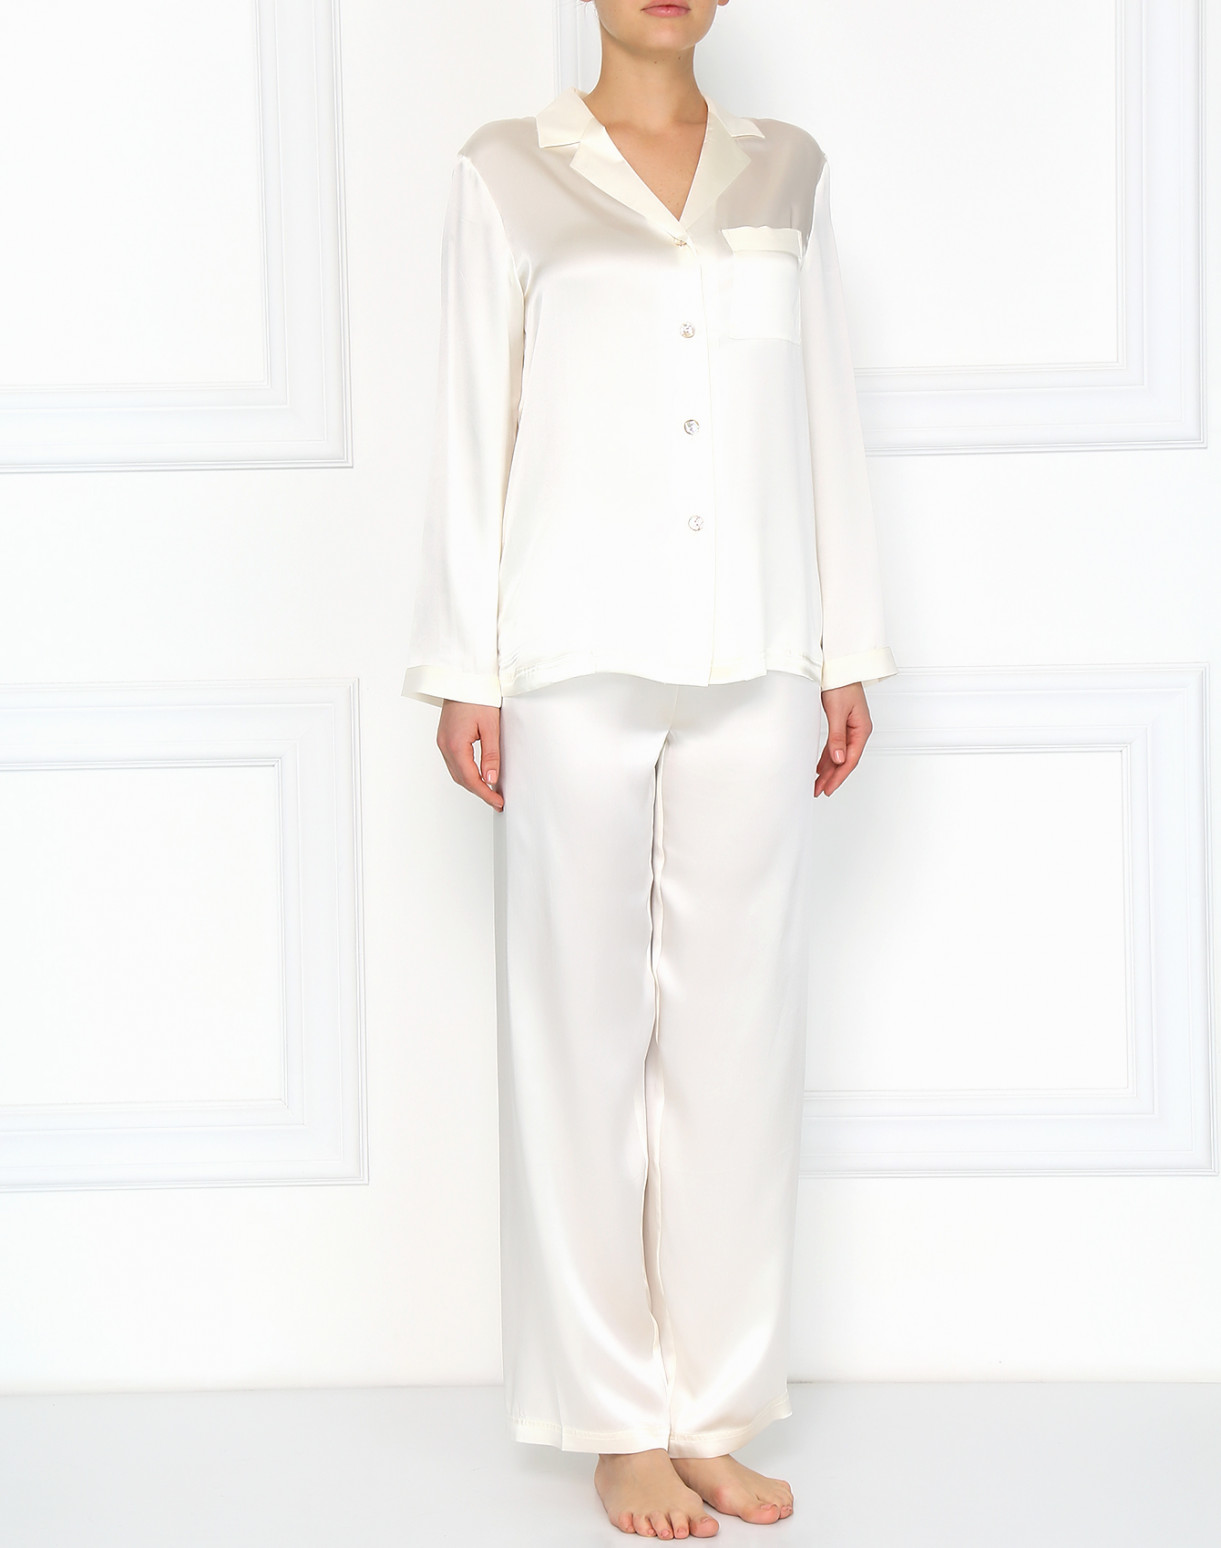 Пижама из шелка Vivis  –  Модель Общий вид  – Цвет:  Белый